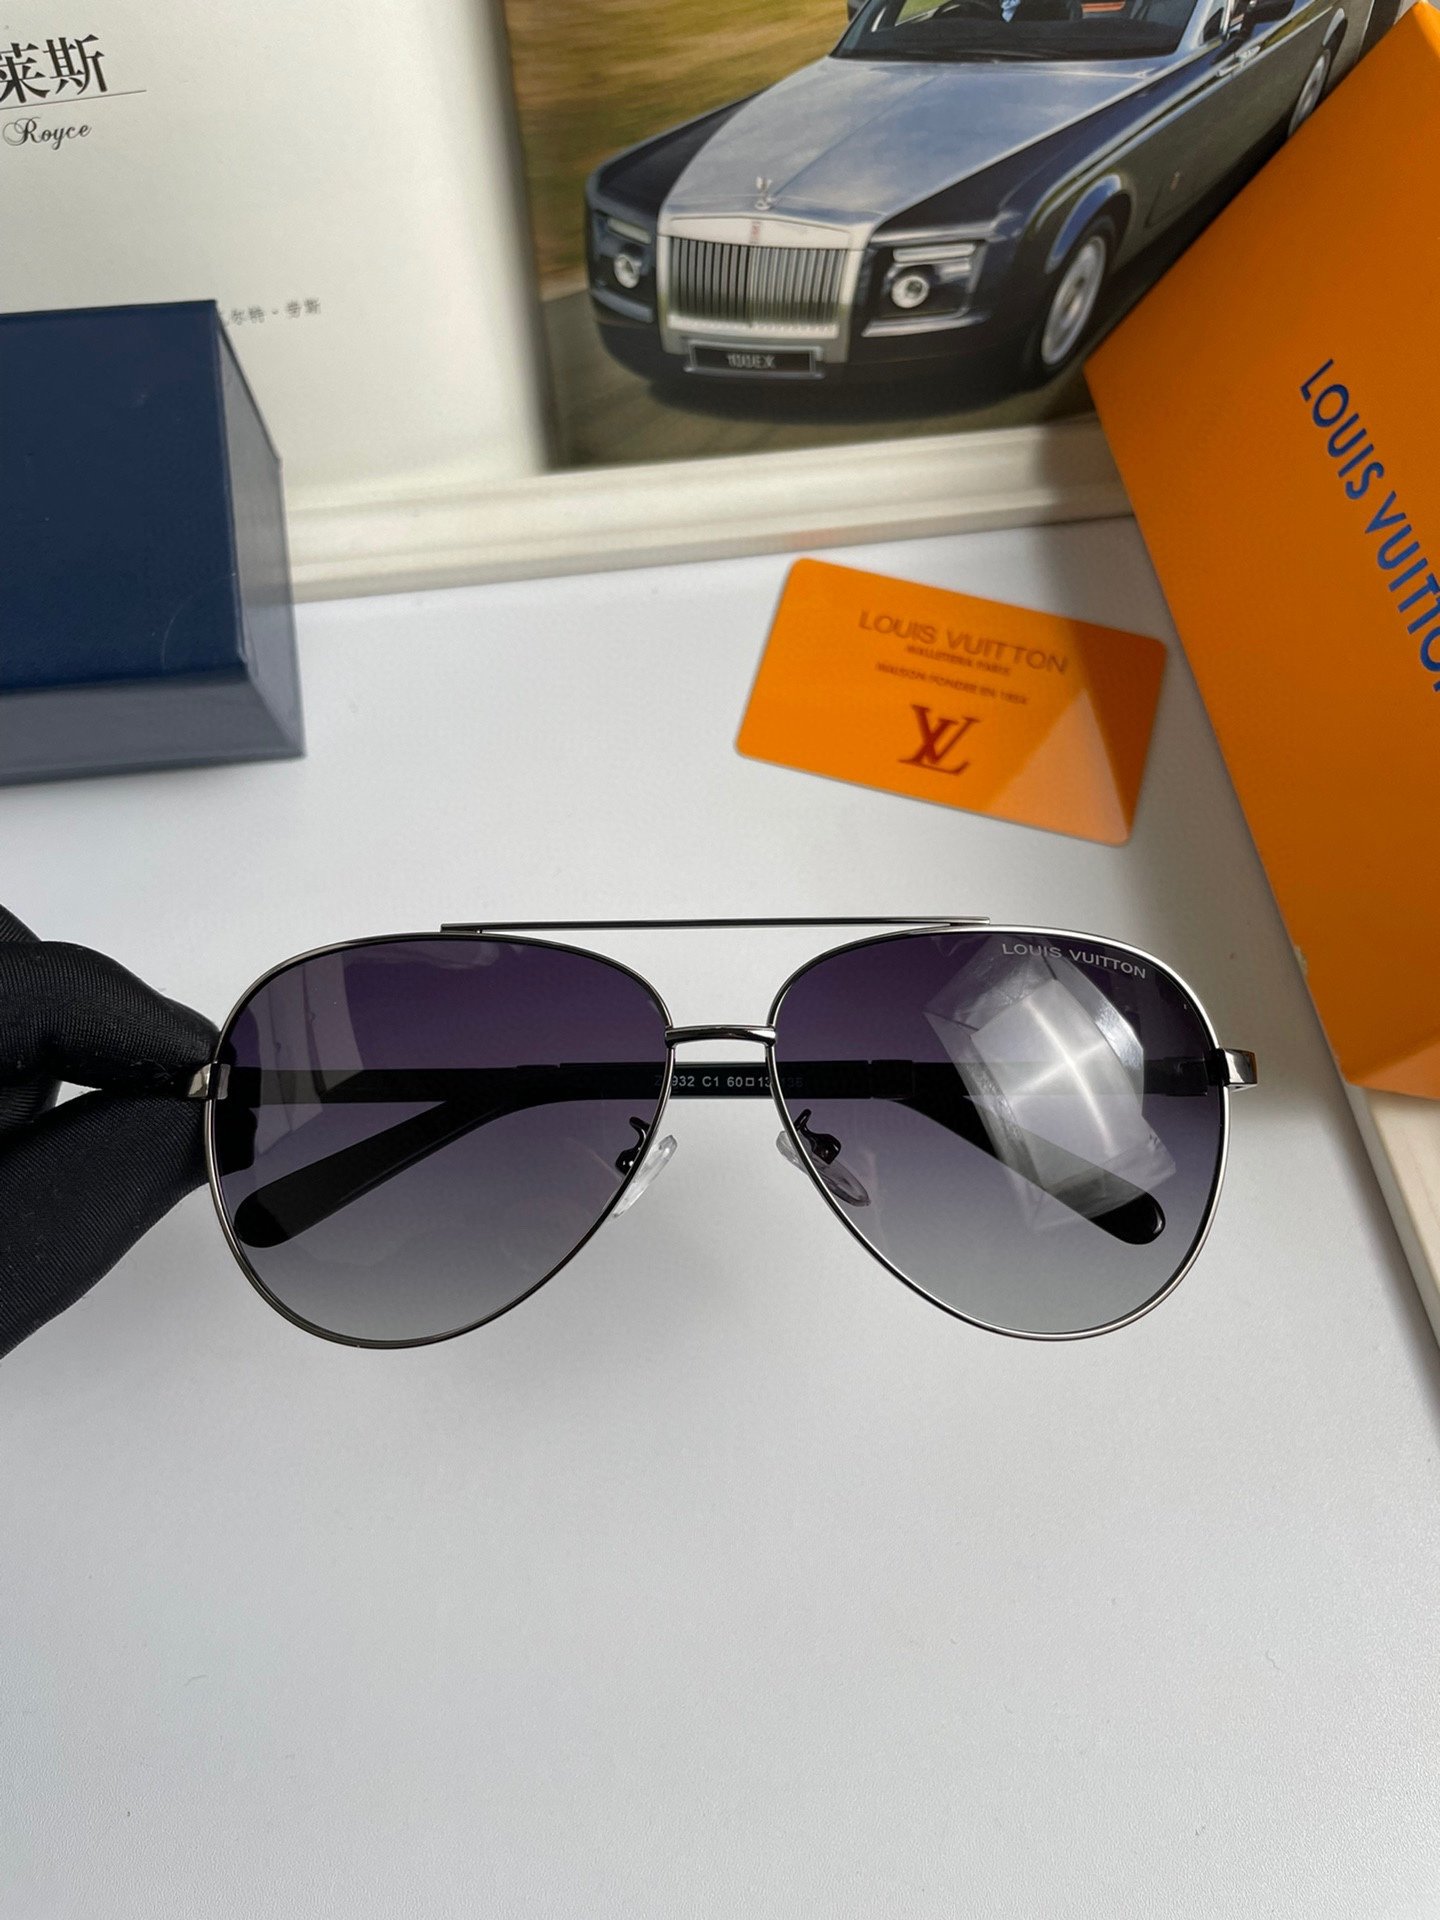 新款品牌路易威登LV高品质男士偏光太阳镜️材质进口宝丽来偏光镜片不锈钢合金镜框质感超赞男士开车必备品